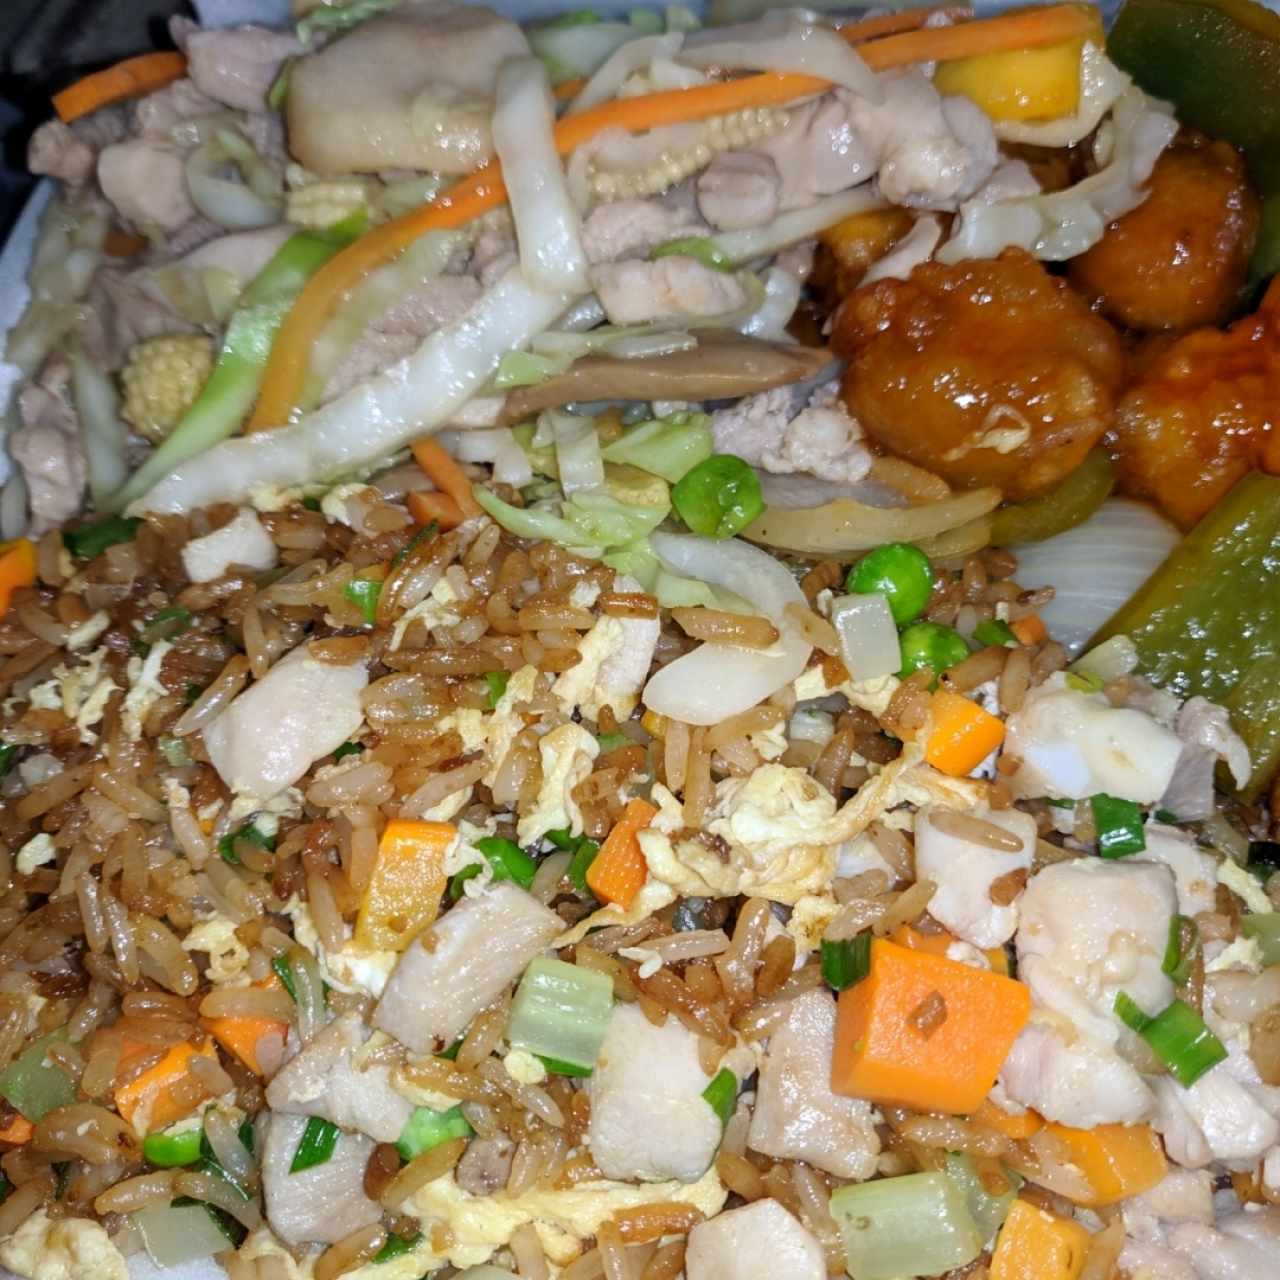 arroz frito, gallina y costillas agridulce